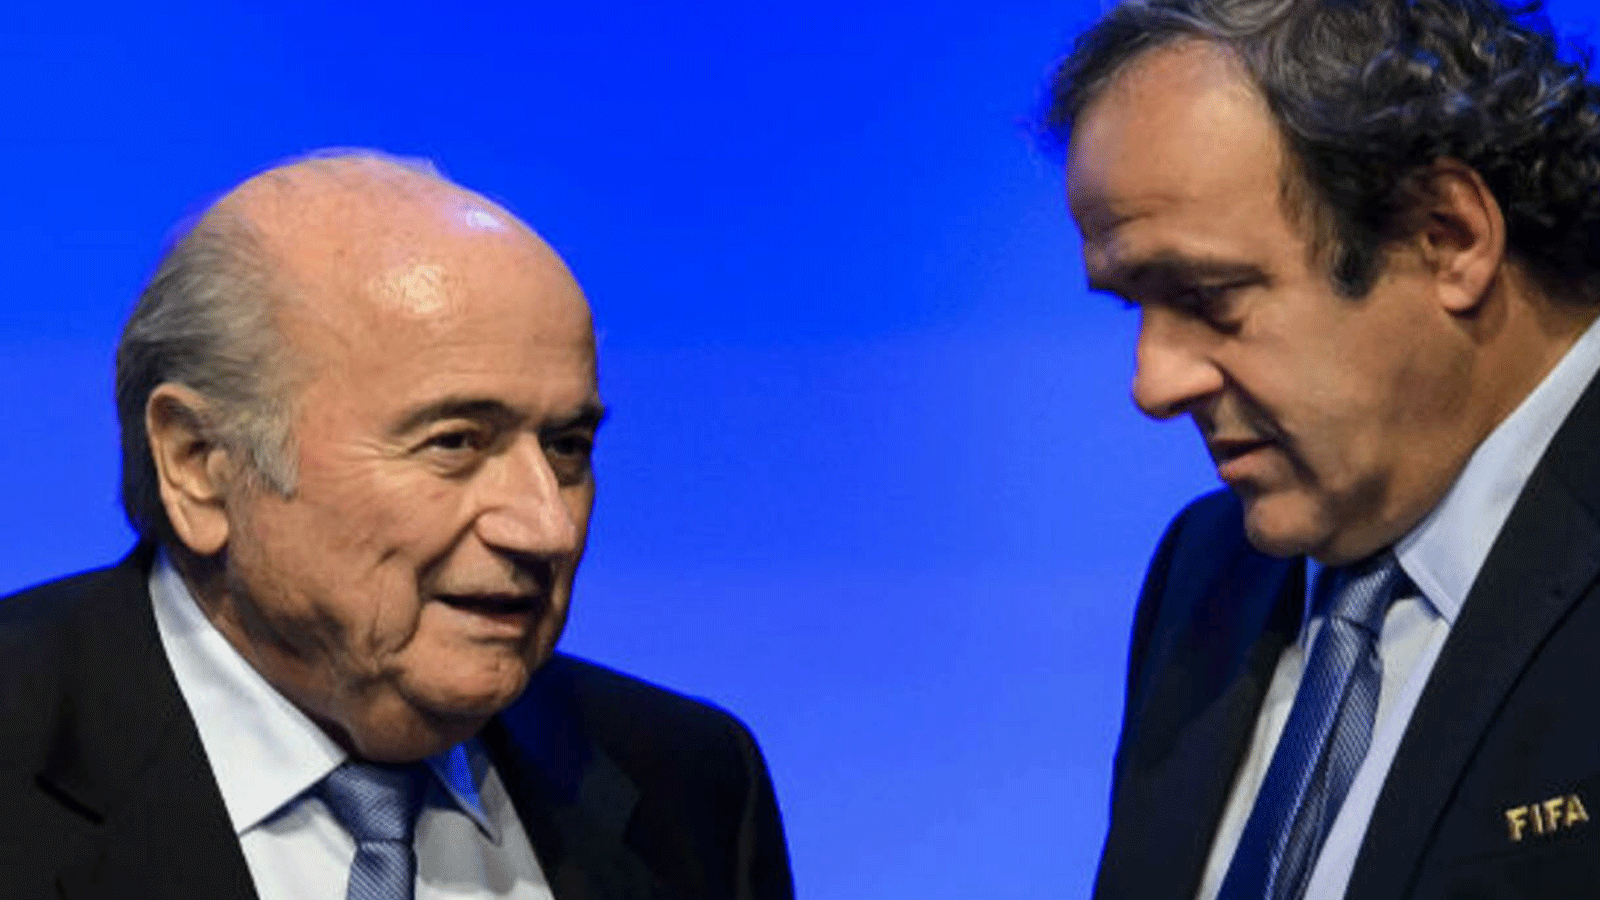 رئيس FIFA سيب بلاتر يتحدث إلى رئيس الاتحاد الأوروبي لكرة القدم ميشيل بلاتيني عشية المباراة الافتتاحية لكأس العالم 2014 FIFA في البرازيل